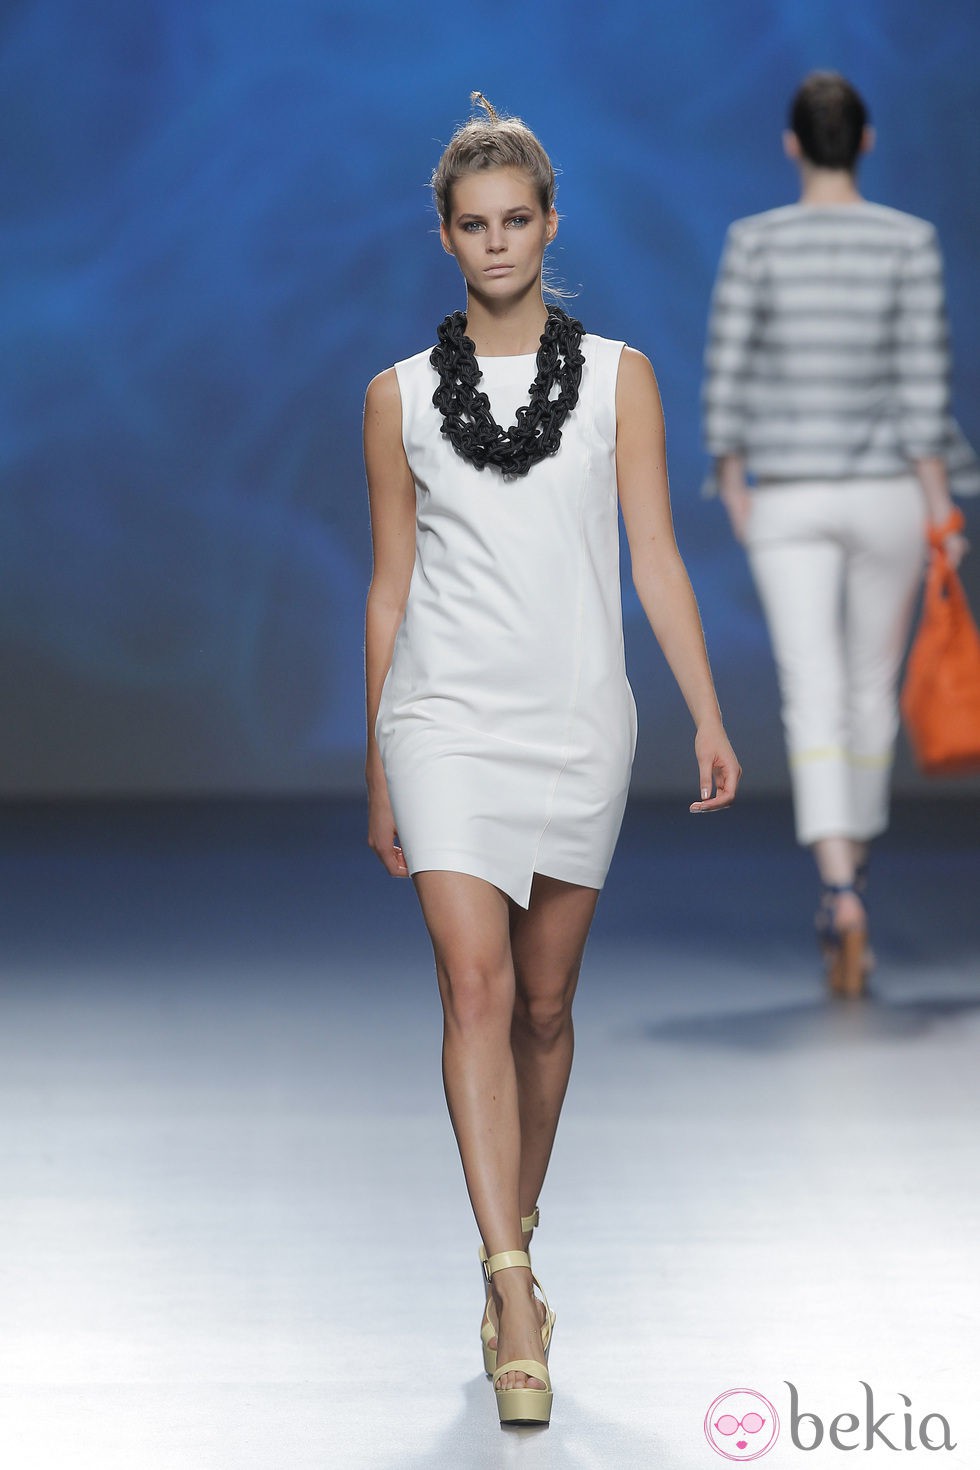 Vestido blanco de Sara Coleman, colección primavera/verano 2013